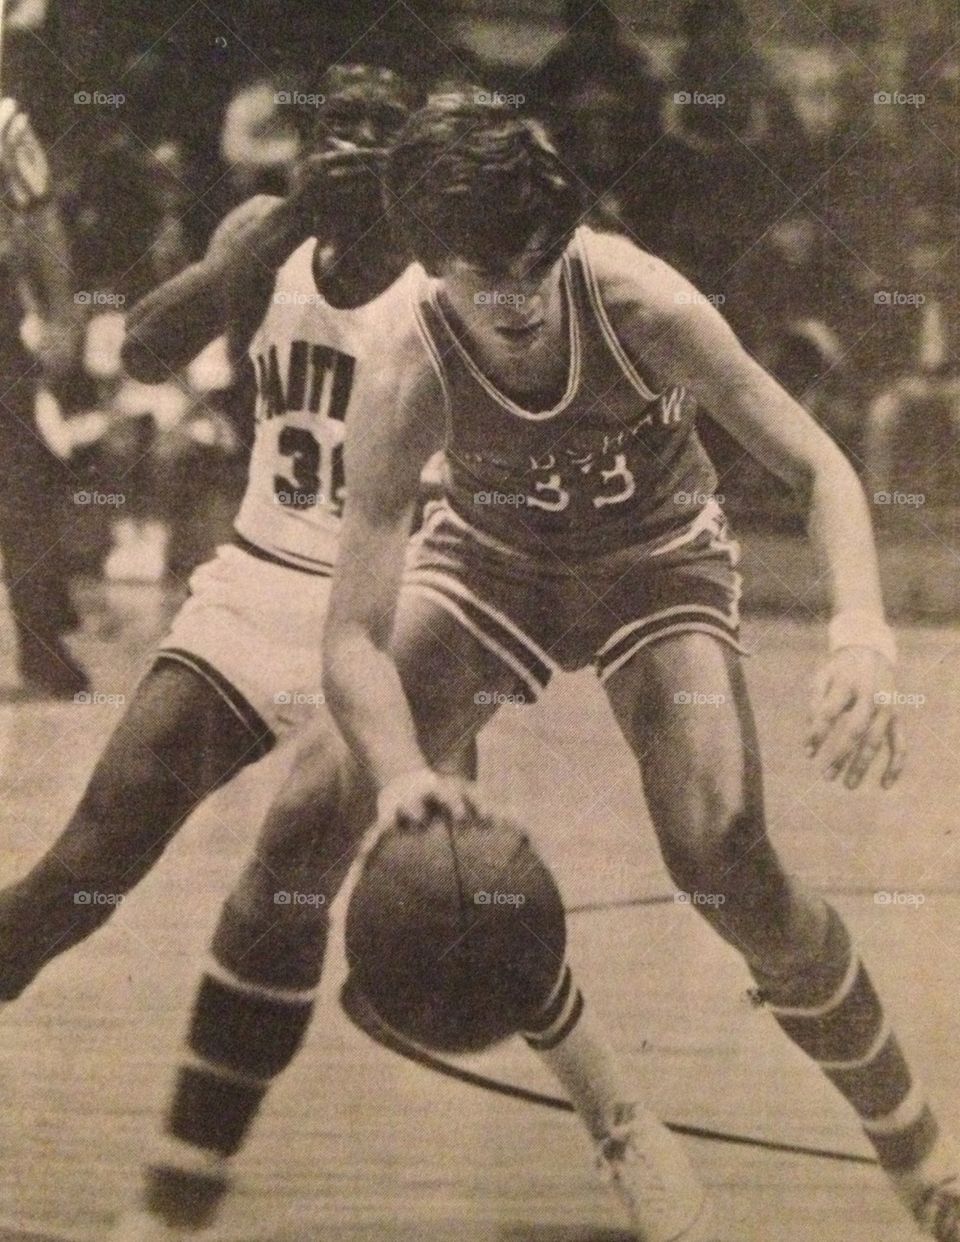 70's Basketball